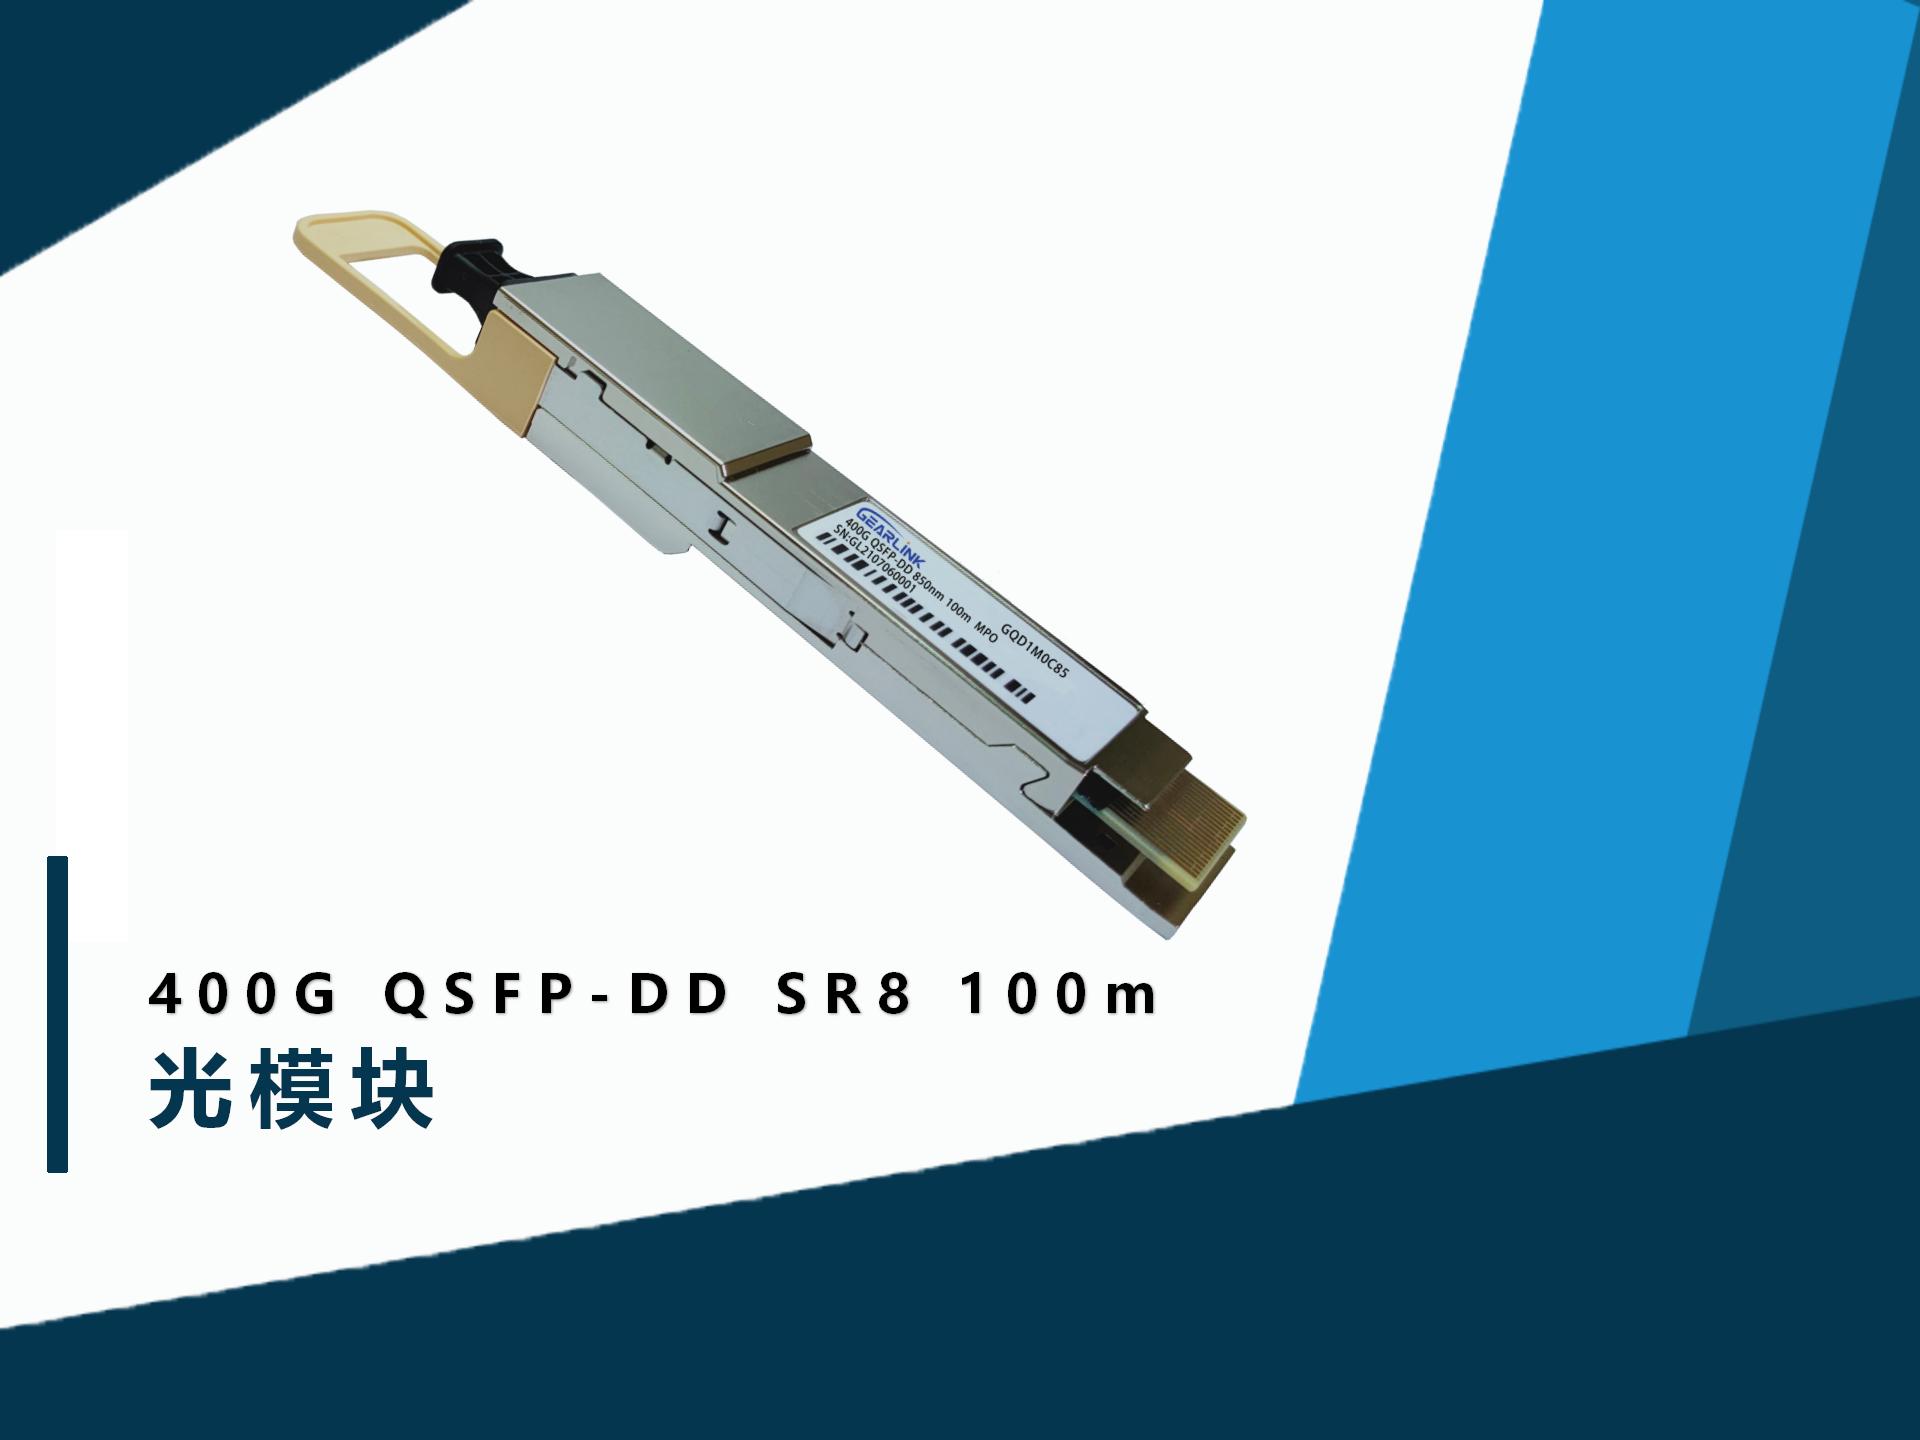 400Gbs QSFP-DD SR8 100m 光模块